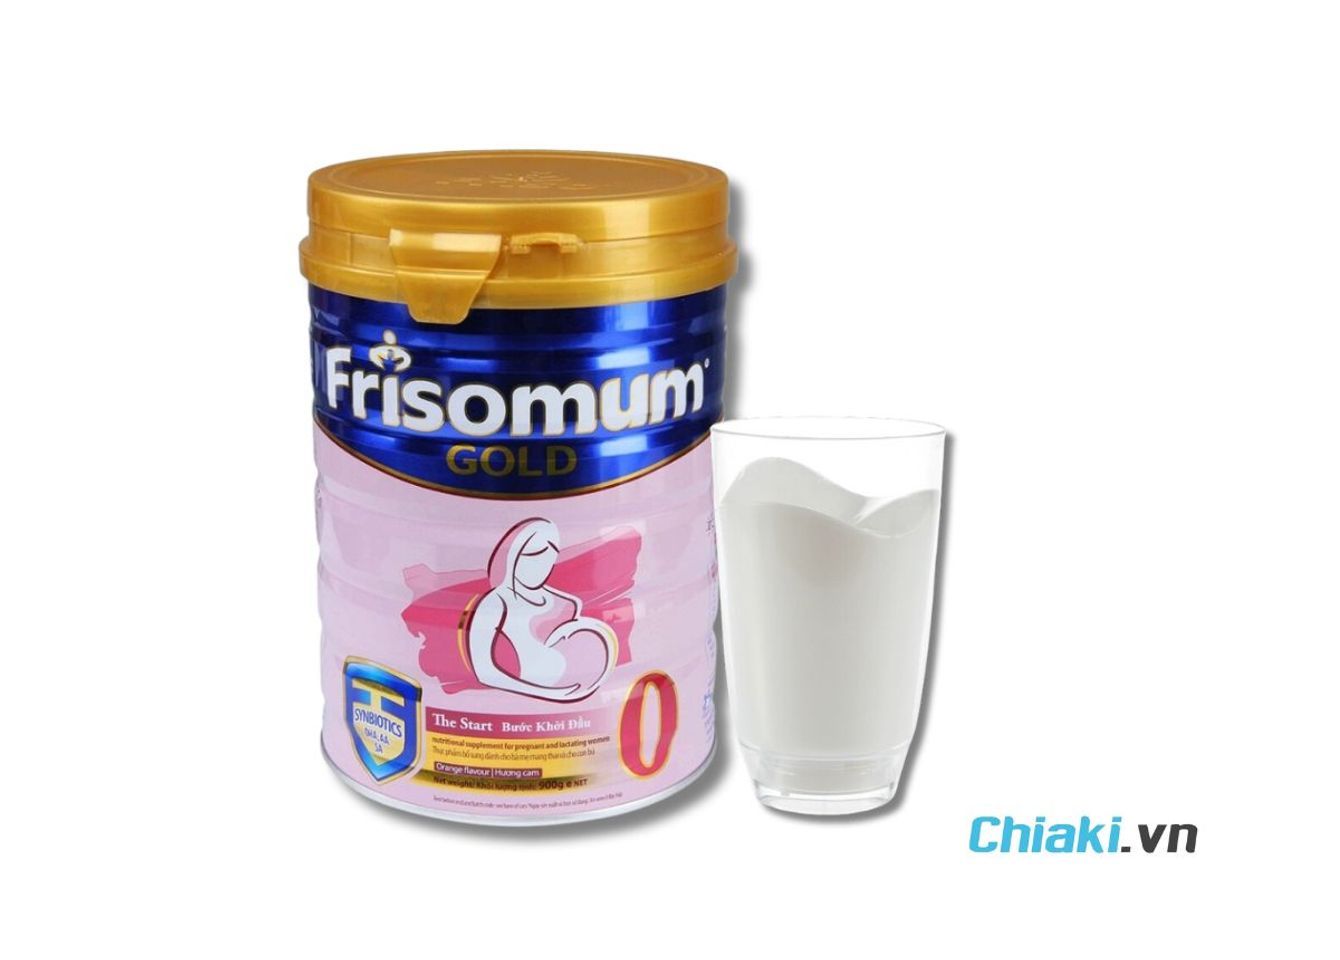 Sữa bầu Meiji Mama Milk